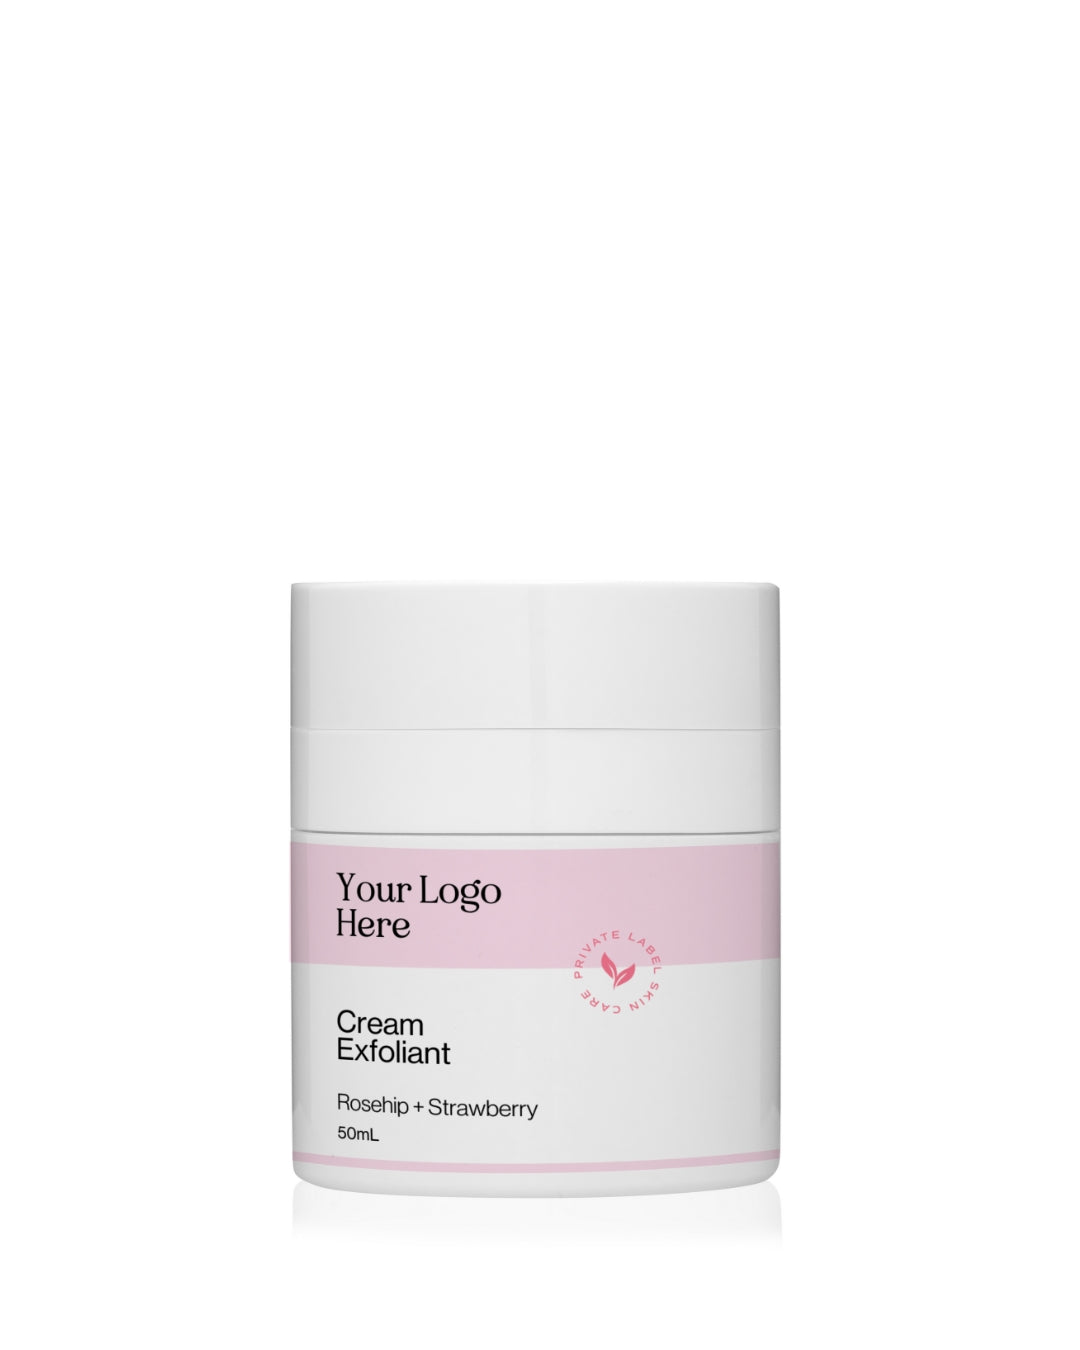 Private Label Skin Care | Cream Exfoliant Retail Size